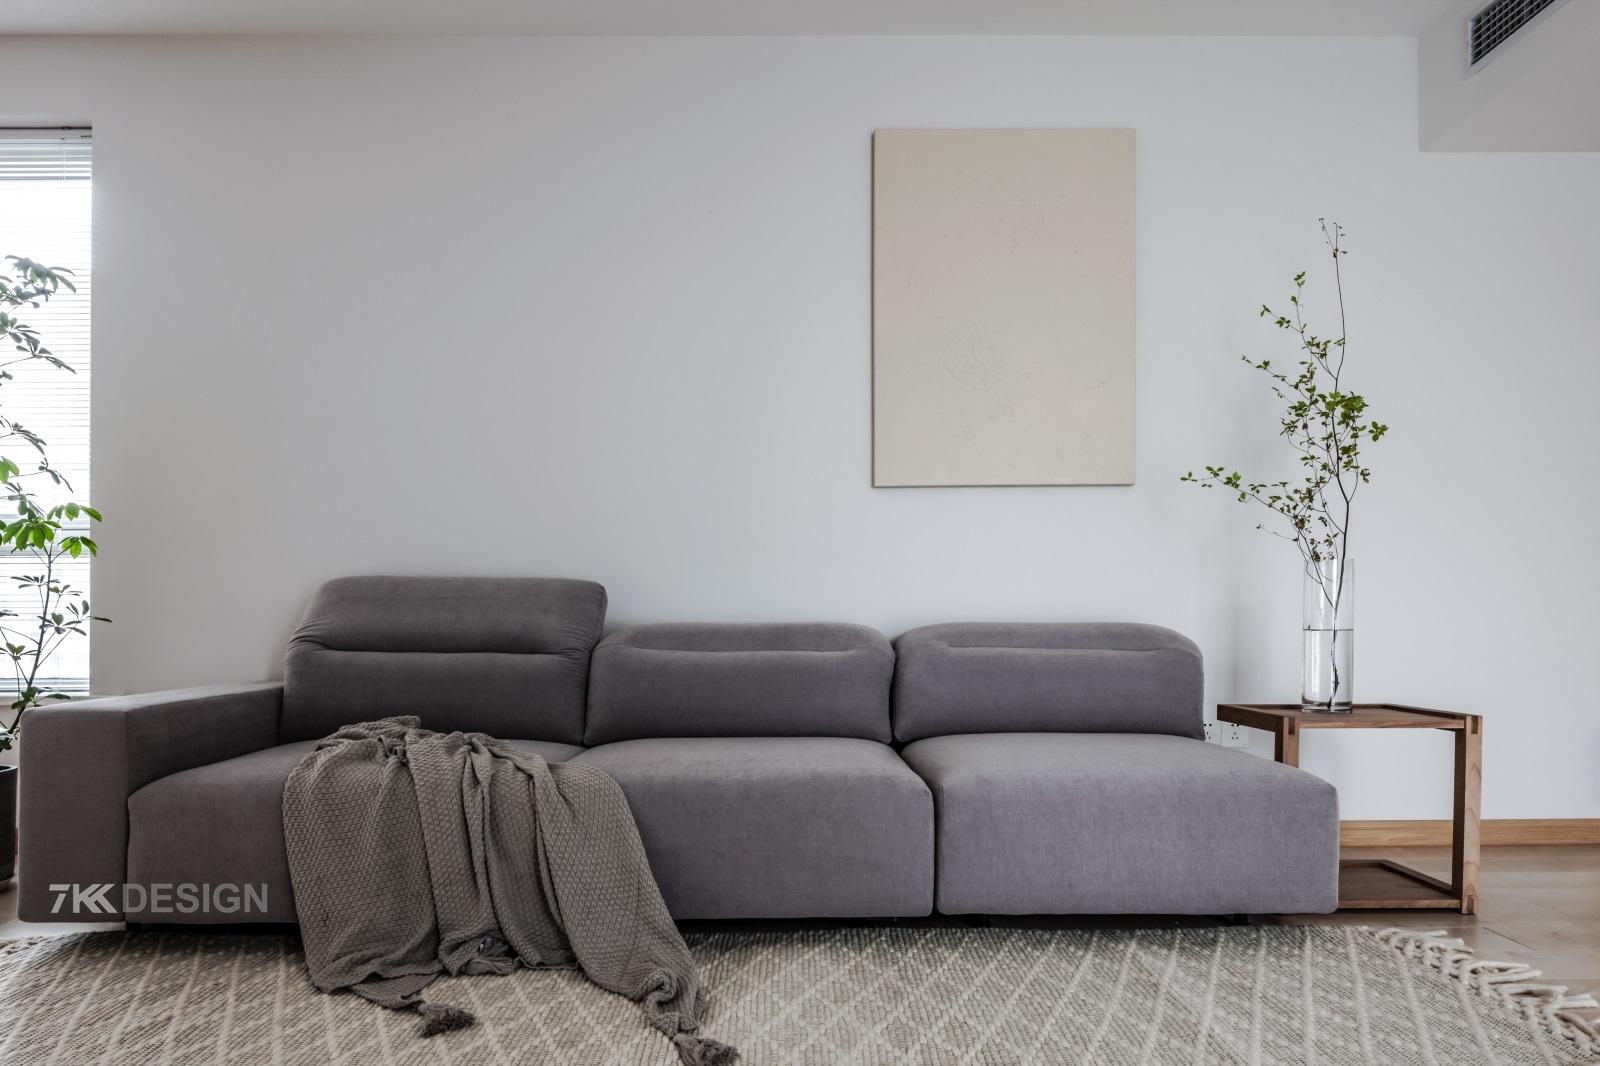 北欧风情的灰色沙发，沉稳而低调，搭配寓意带来幸福的日本吊钟，纯净白色的墙体，饱含生机而不失气质，看一眼便能让人内心平和而舒适。